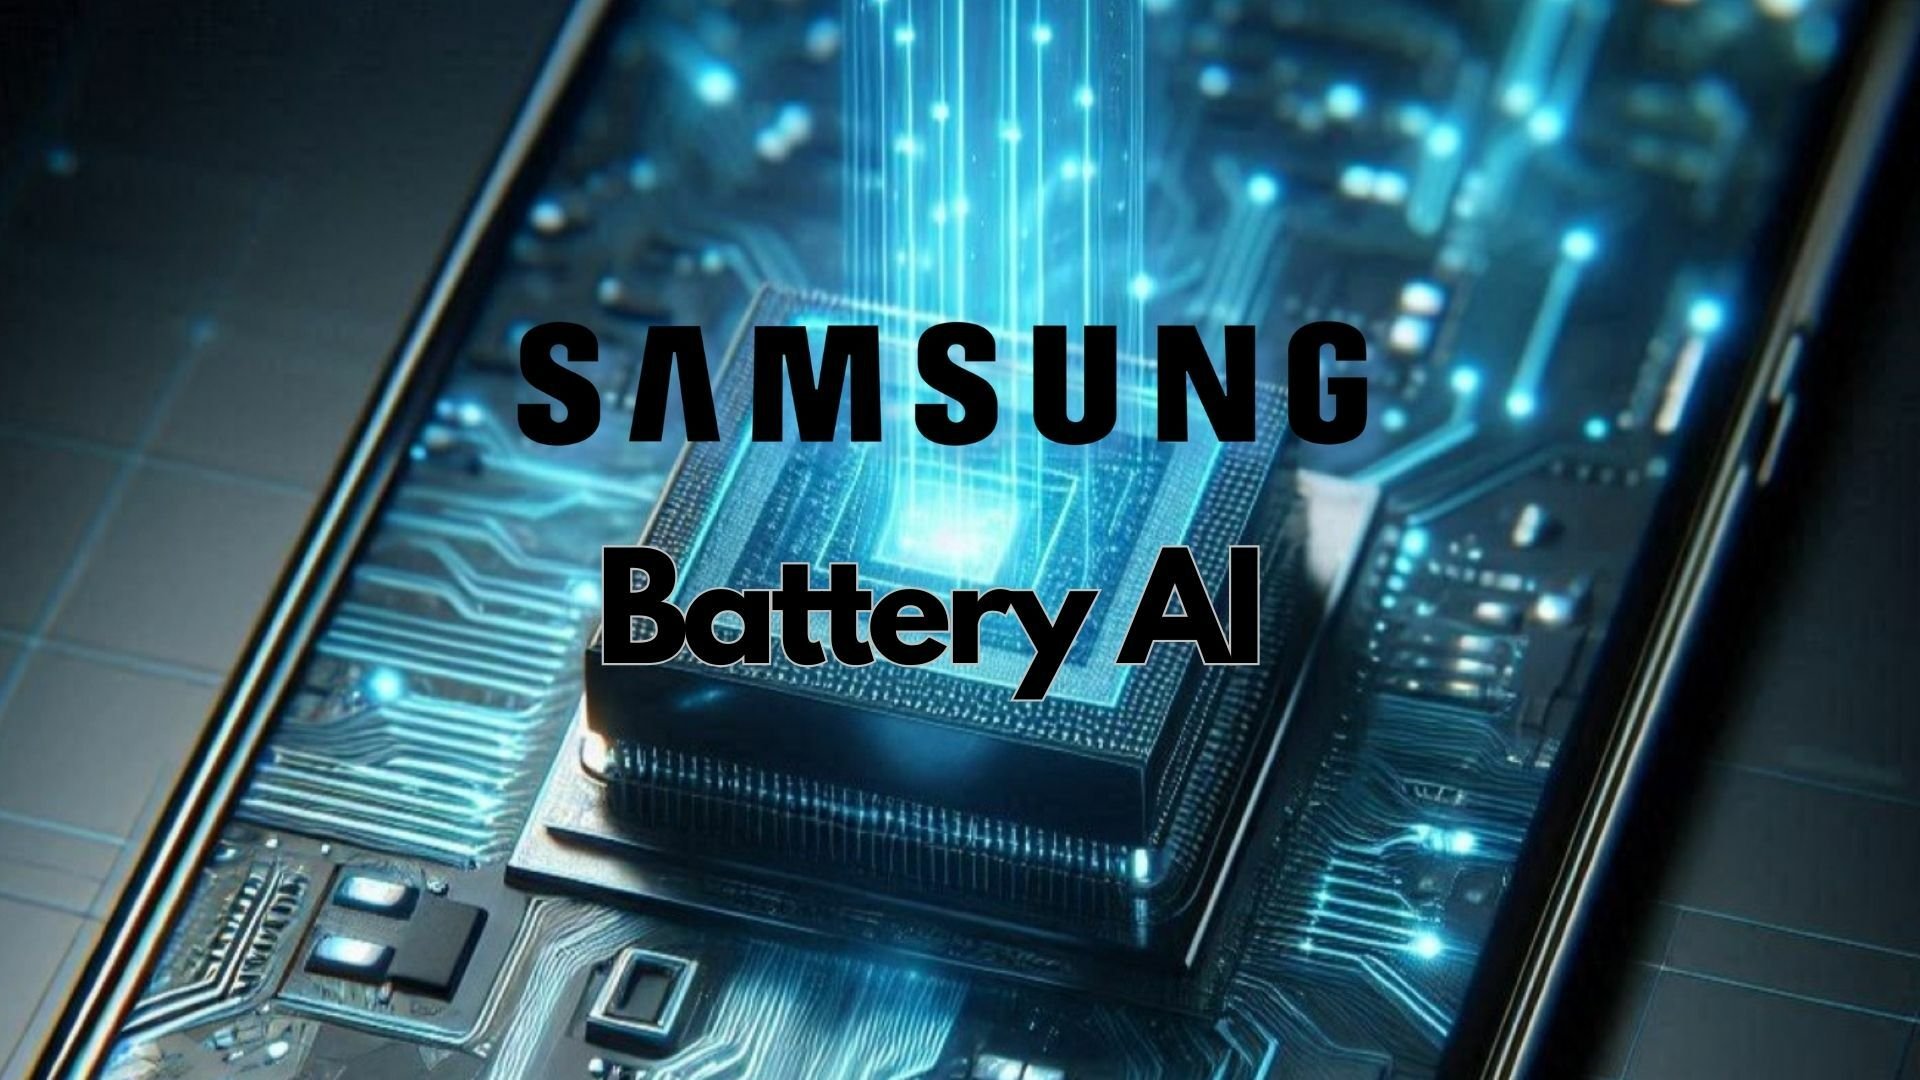 Samsung trabalha em novo recurso de IA para economizar bateria do celular, segundo rumor